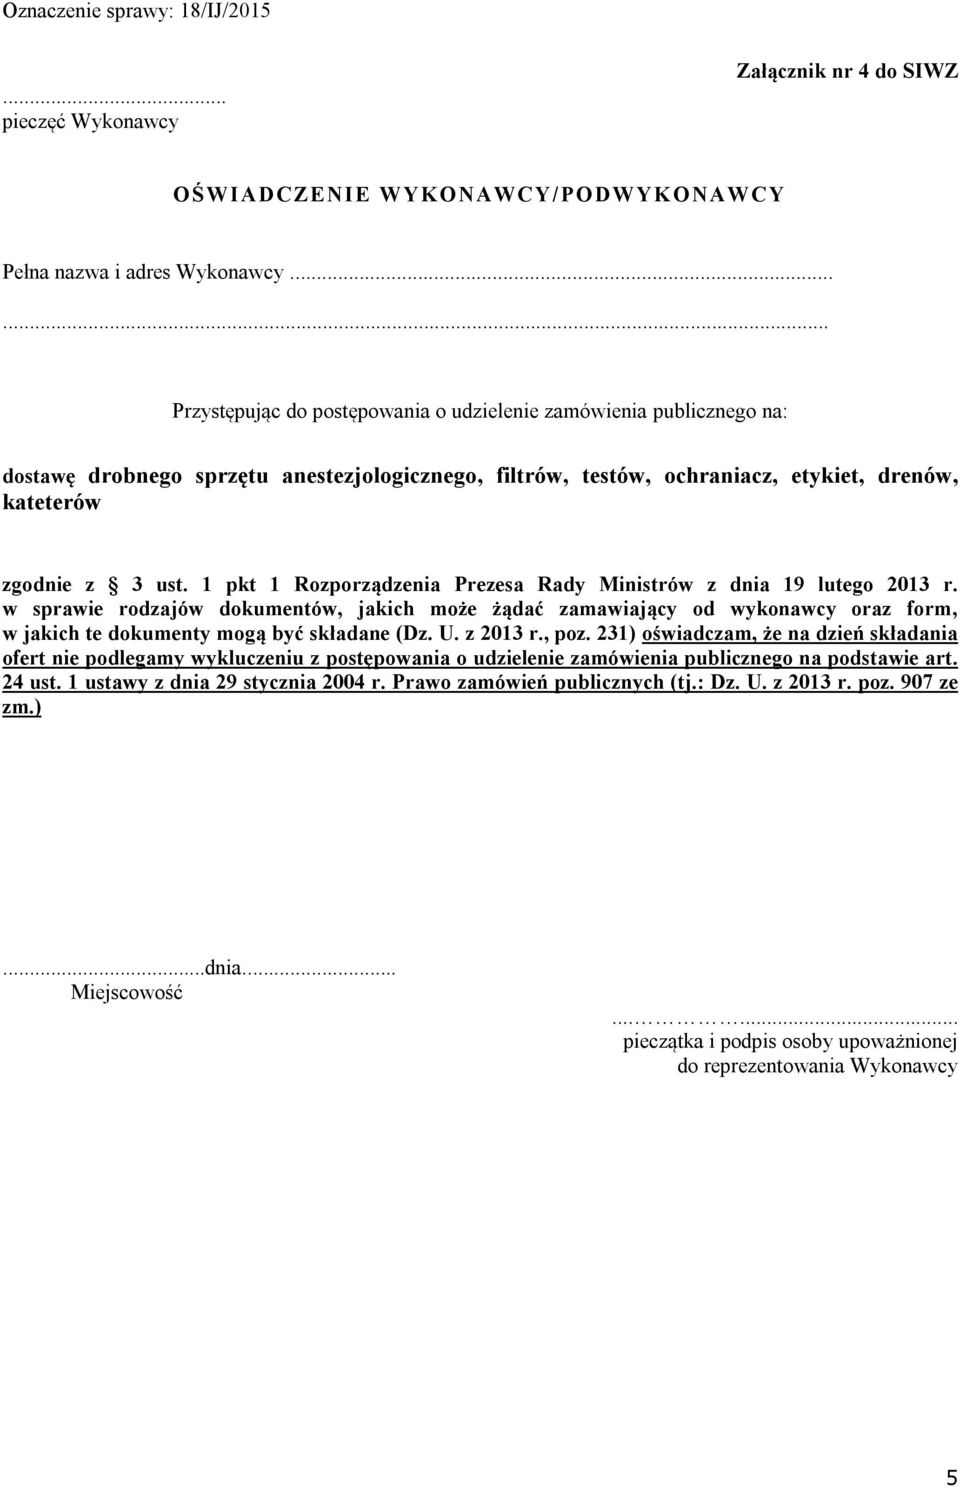 1 pkt 1 Rozporządzenia Prezesa Rady Ministrów z dnia 19 lutego 2013 r. w sprawie rodzajów dokumentów, jakich może żądać zamawiający od wykonawcy oraz form, w jakich te dokumenty mogą być składane (Dz.